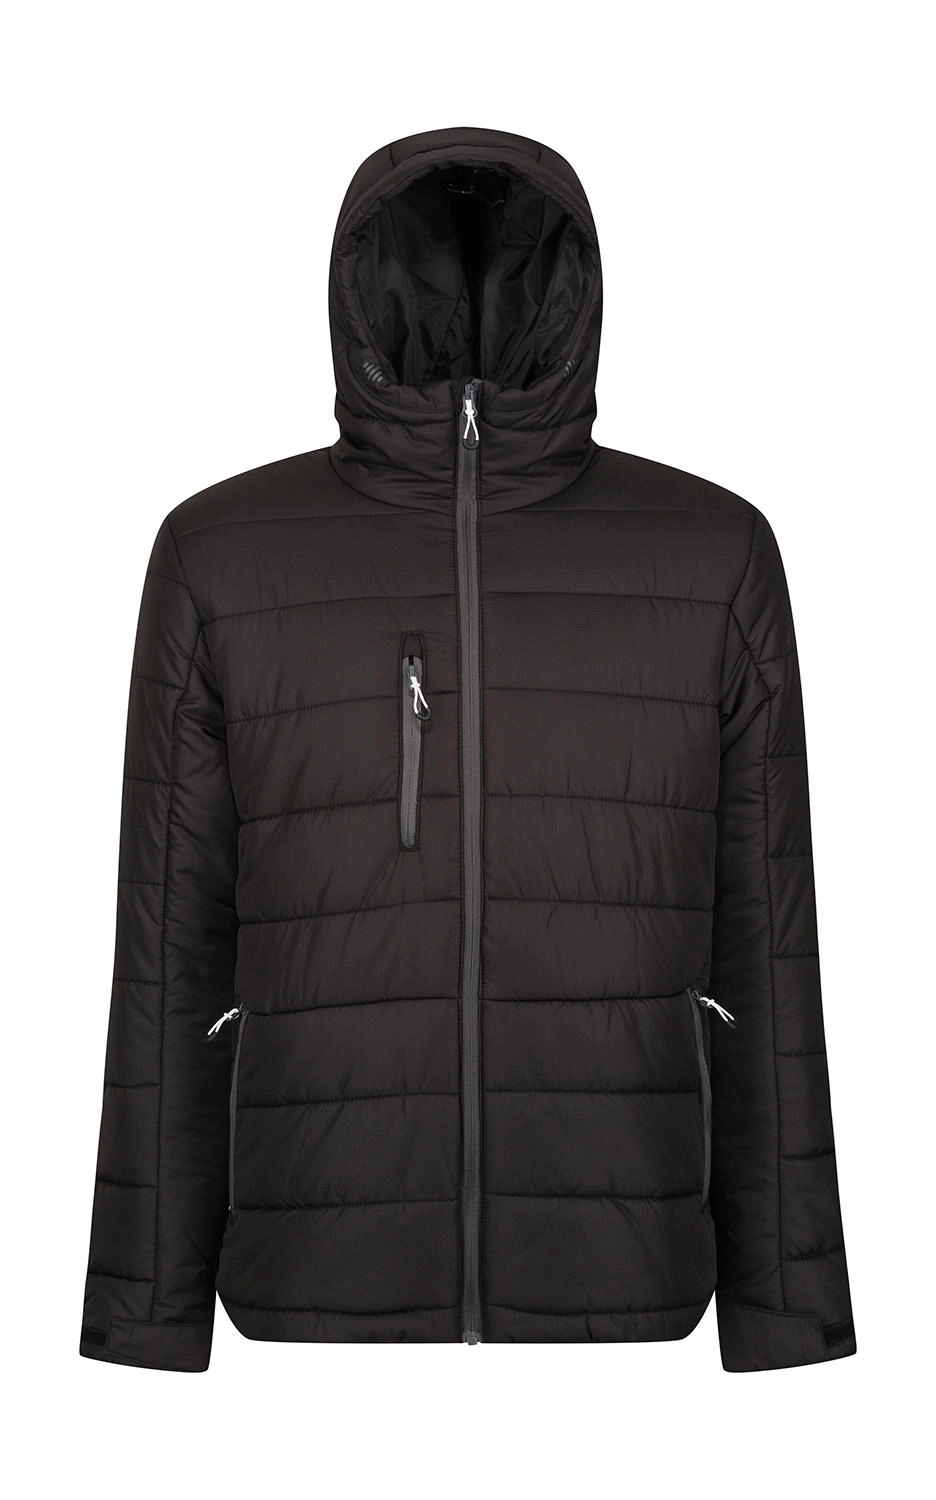 Men’s Navigate Thermal Hooded Jacket zum Besticken und Bedrucken in der Farbe Black/Seal Grey mit Ihren Logo, Schriftzug oder Motiv.